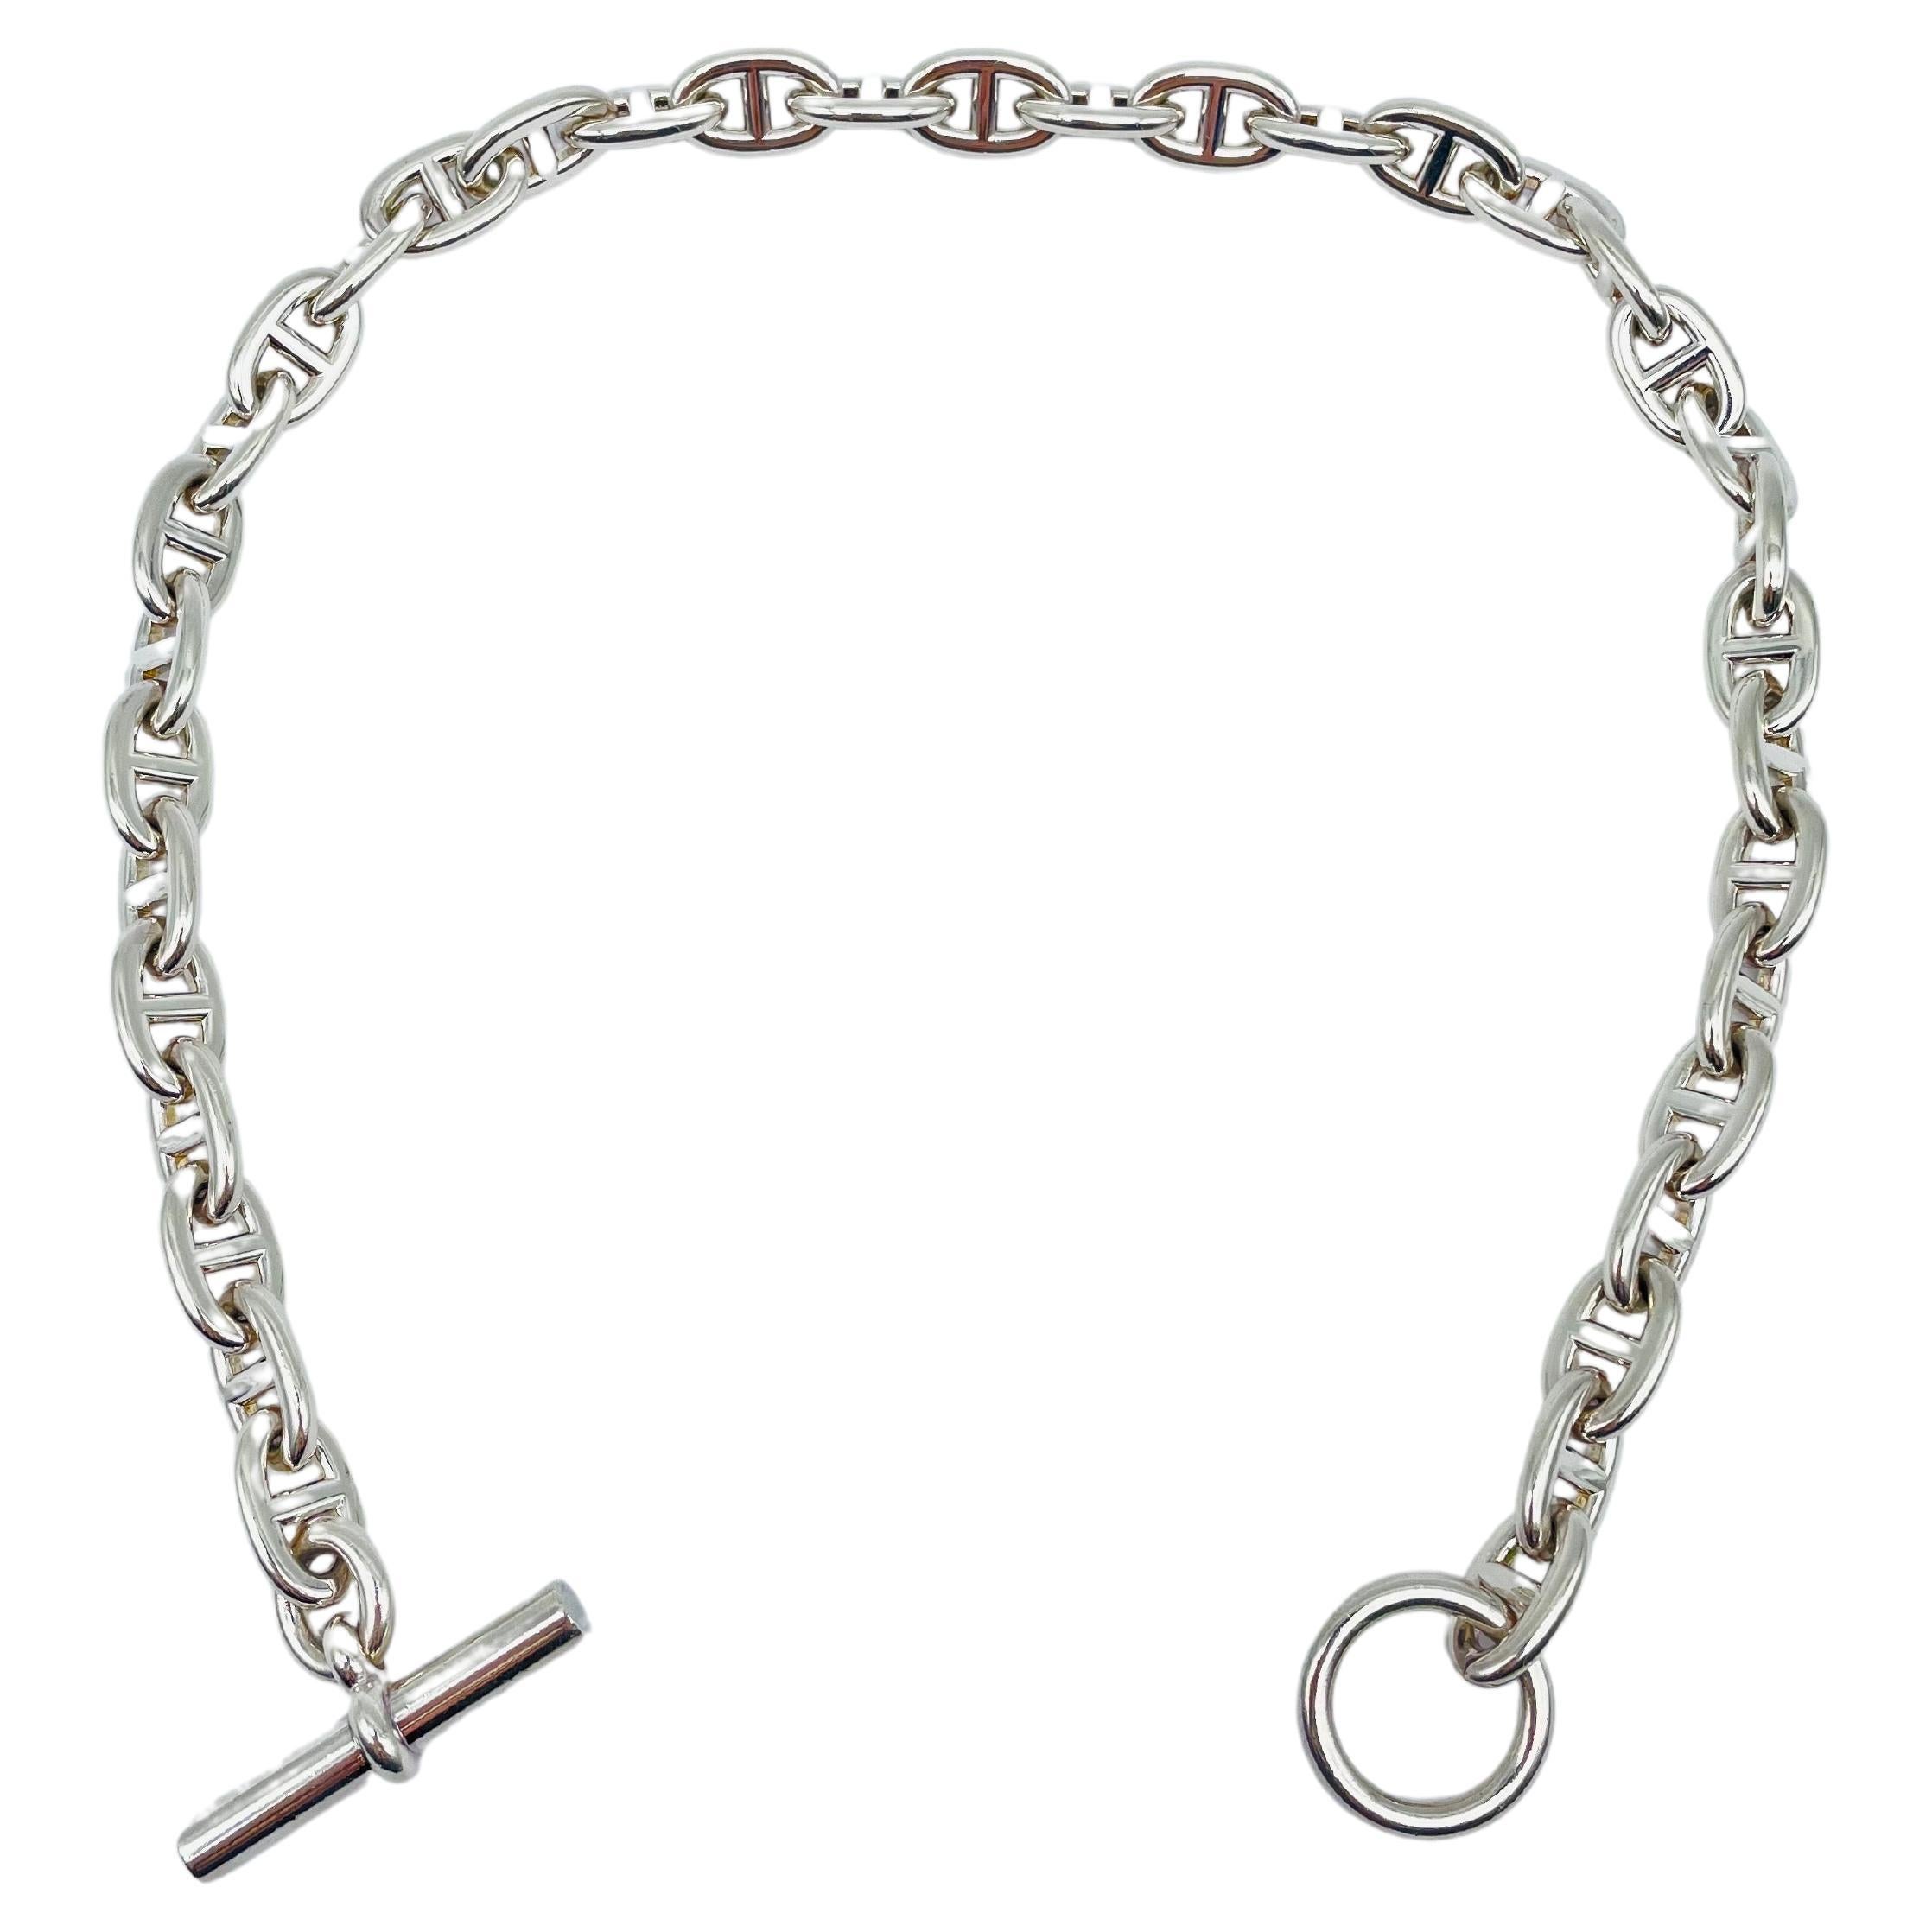 Original Hermes Chaîne D’ Ancre Link Necklace, Silver